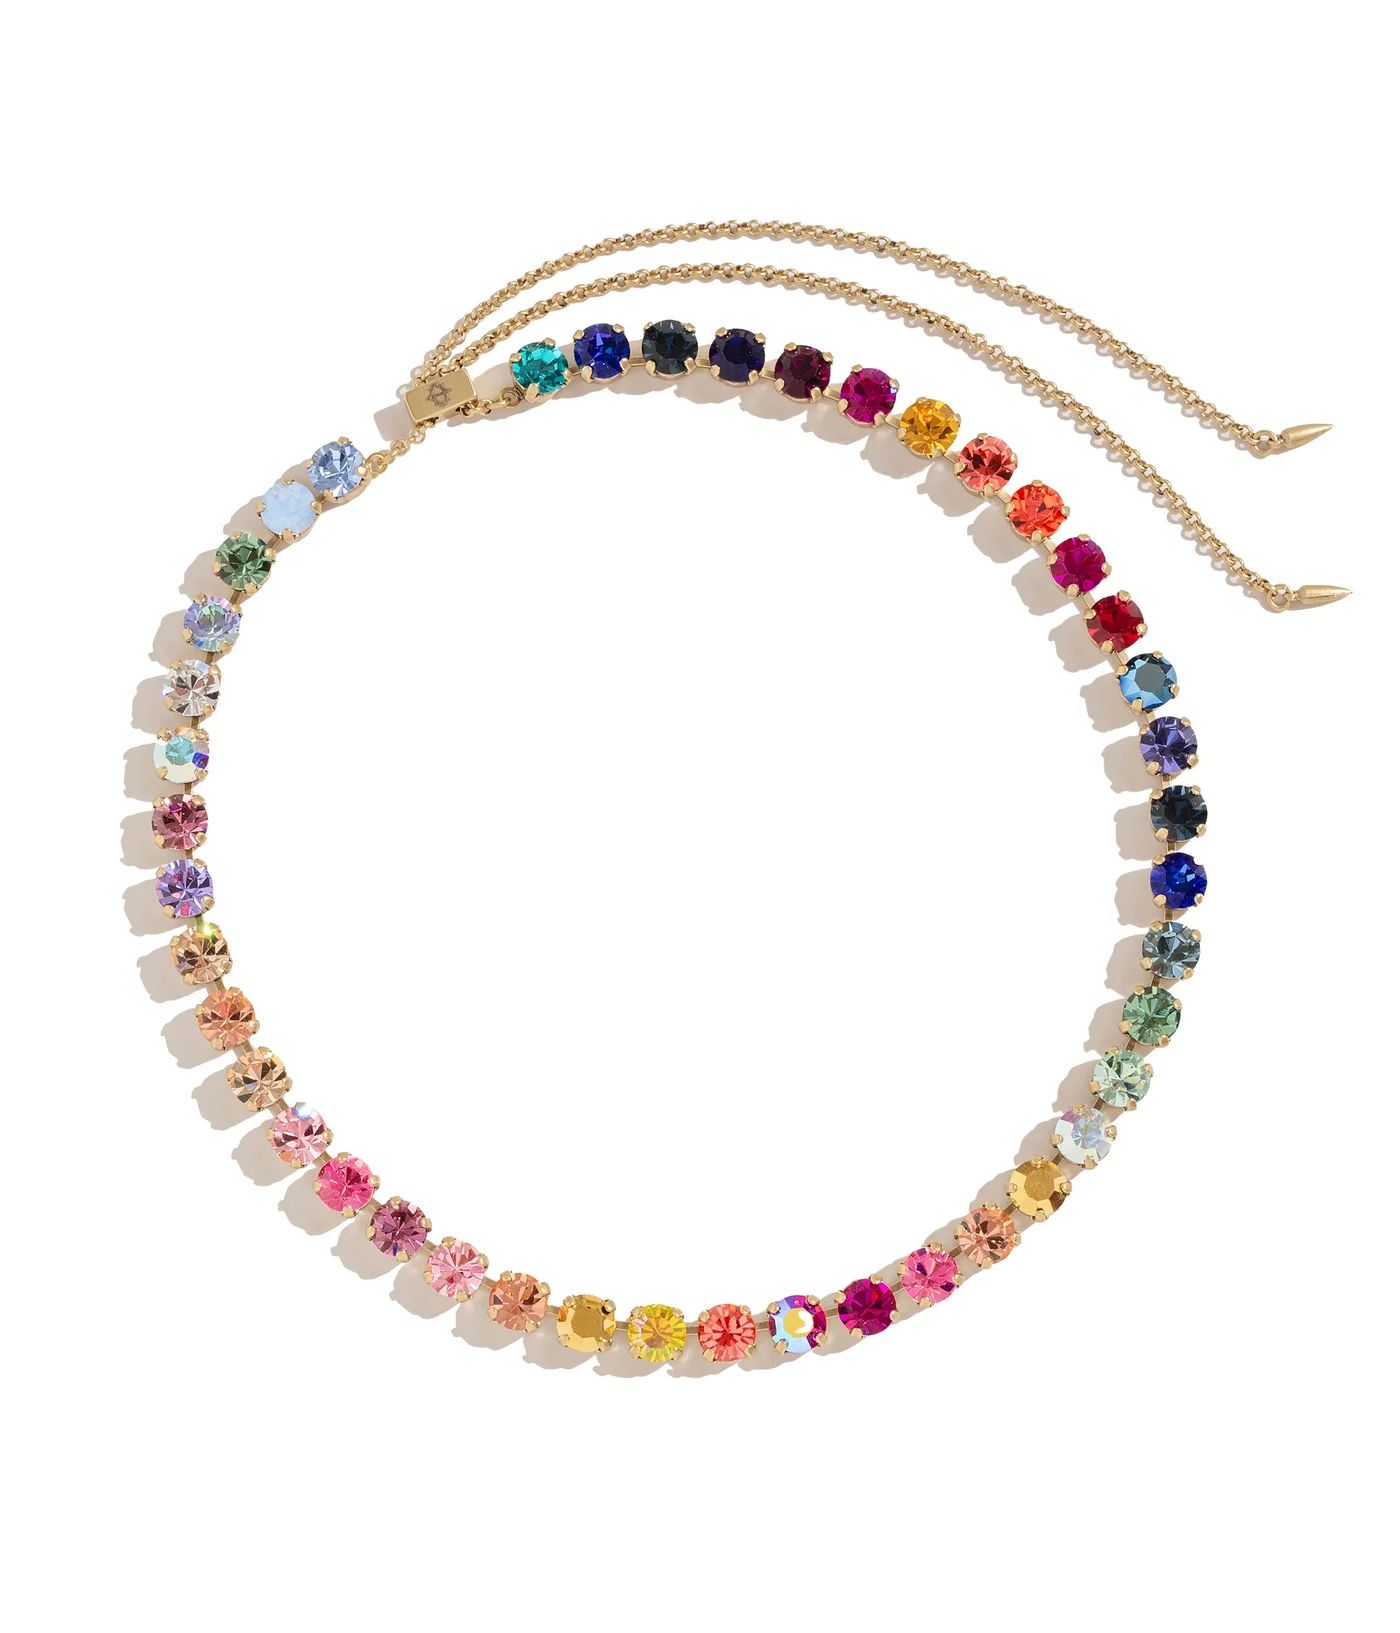 Arista Slider Necklace in Cosmic Ombré | Loren Hope Designs